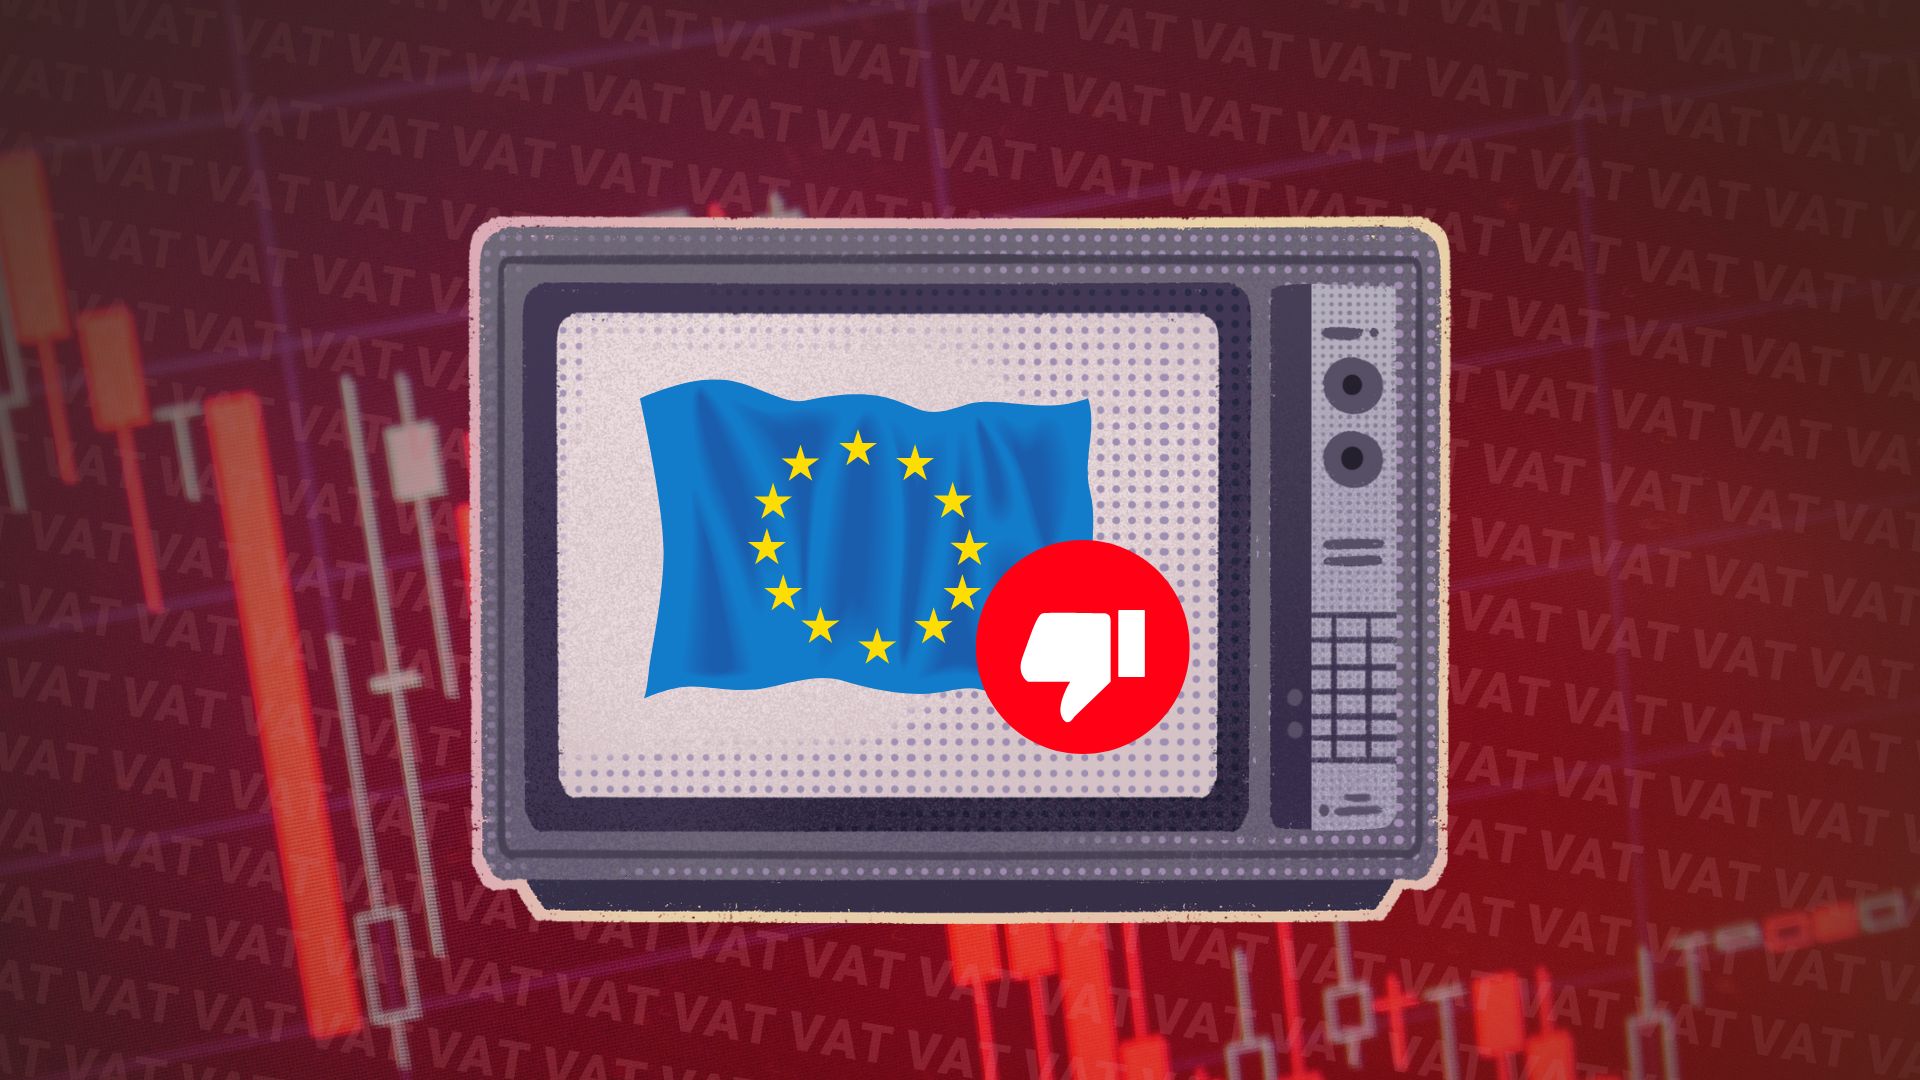 Obrazek przedstawia telewizor wyświetlający flagę UE z symbolem kciuka w dół.